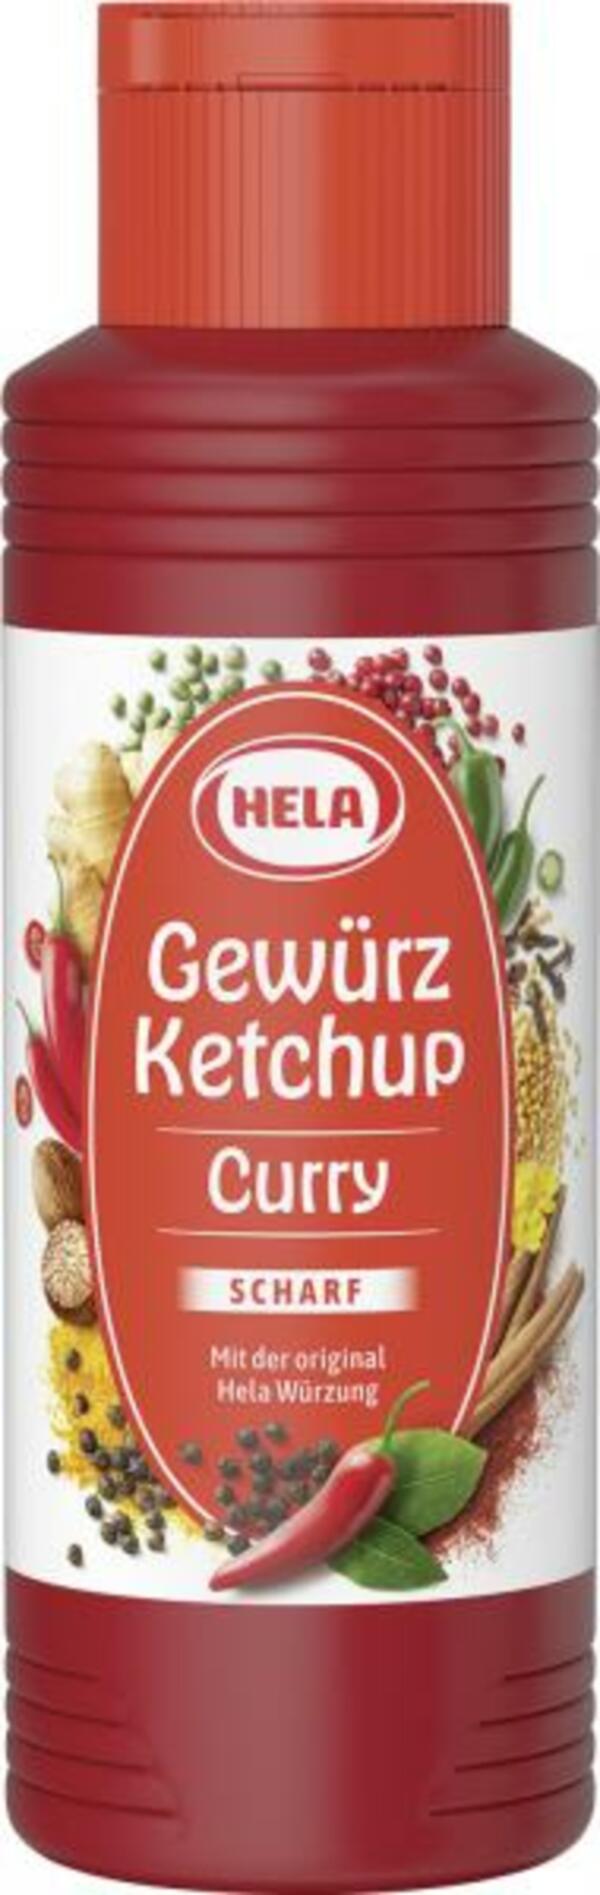 Bild 1 von Hela Curry Gewürz Ketchup scharf